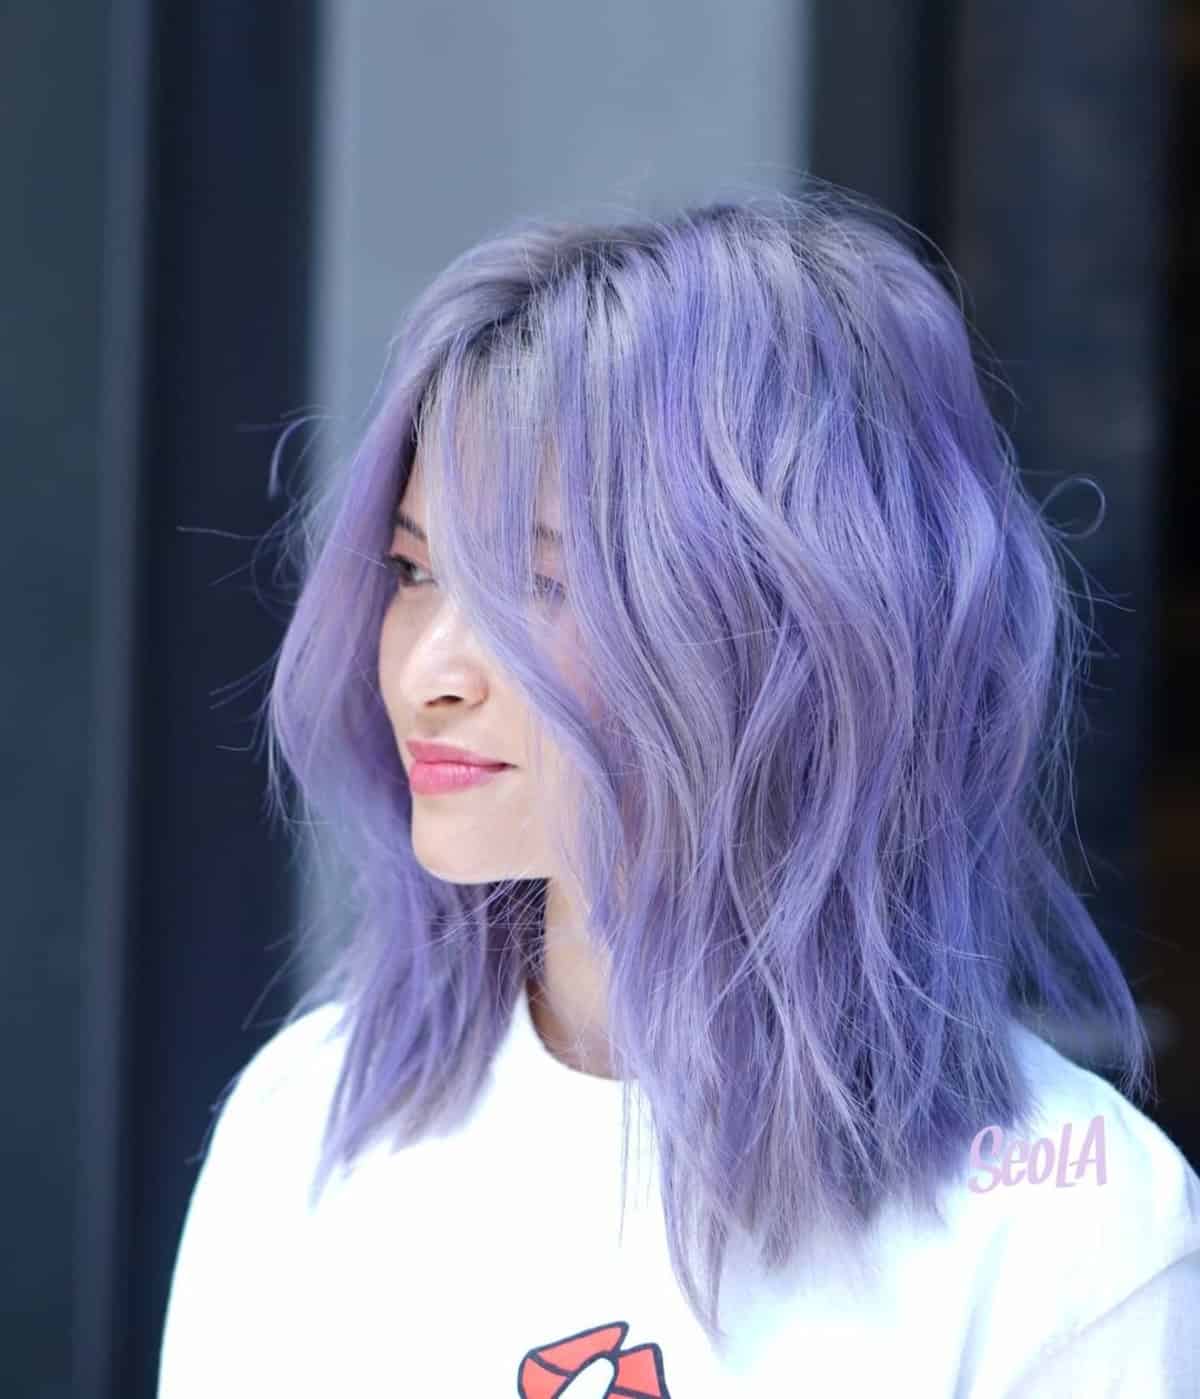 Light lavender purple hair color